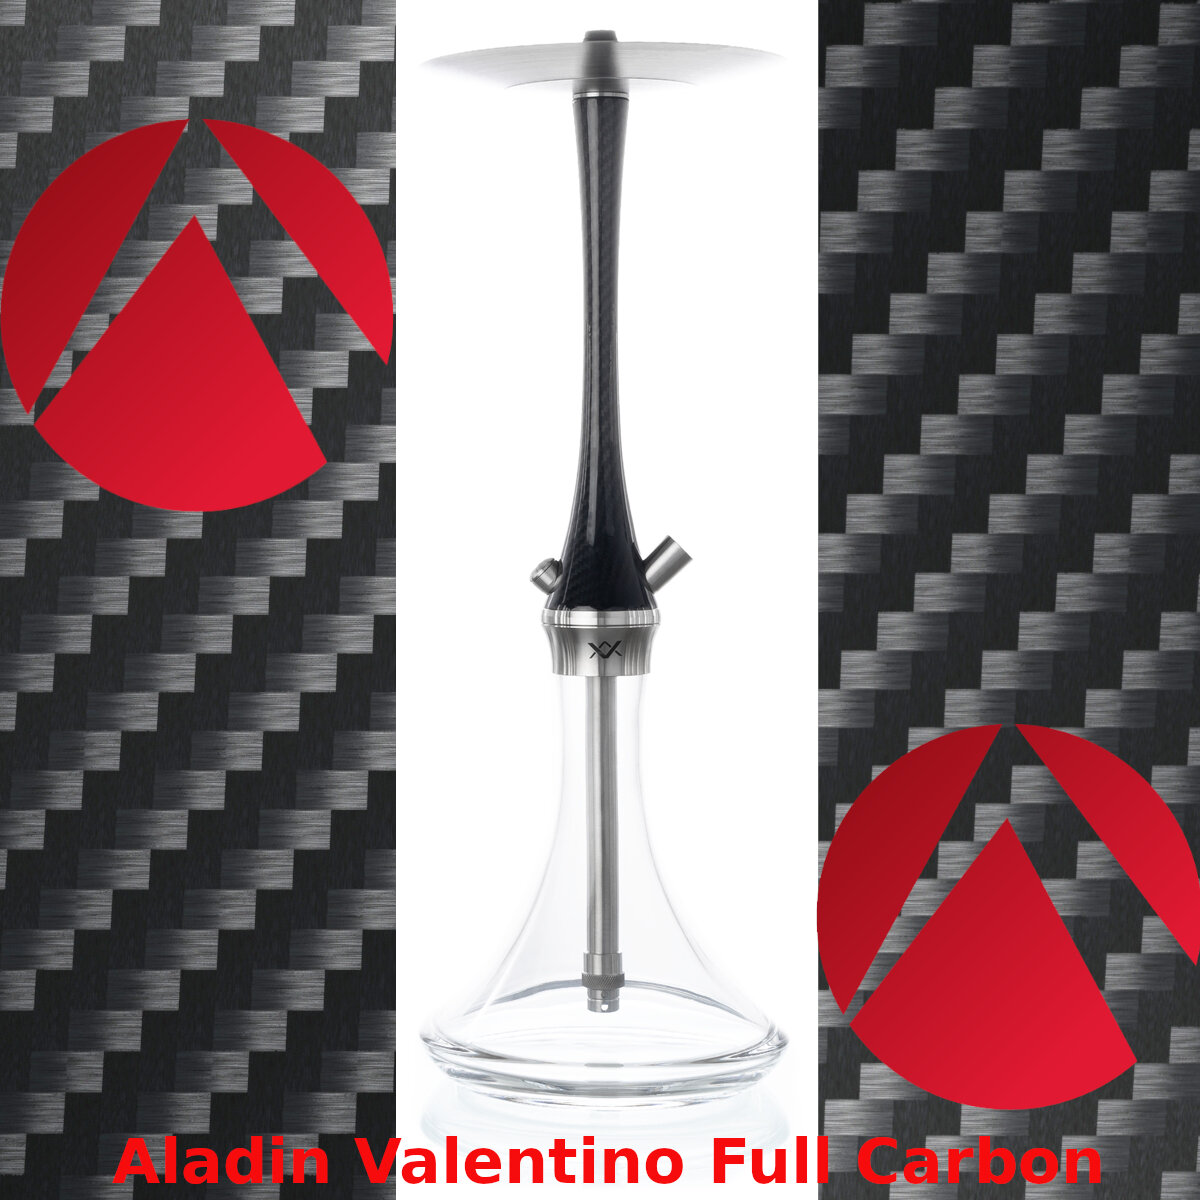 Aladin Valentino Full Carbon Shisha - Aladin Valentino Full Carbon Shisha